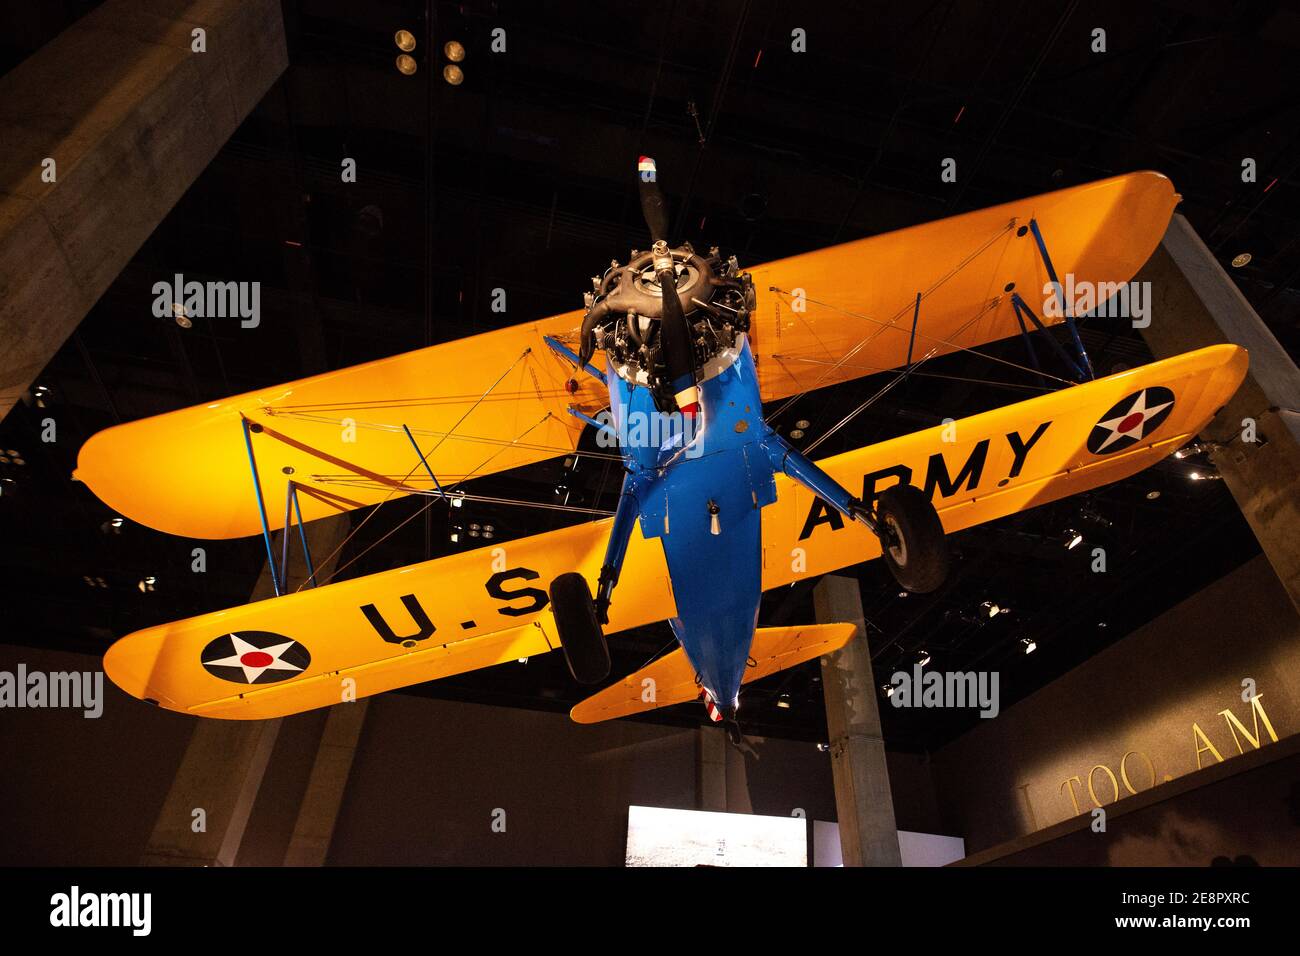 The Spirit of Tuskegee, un biplan piloté par les aviateurs Tuskegee, suspendu au Musée national d'histoire et de culture afro-américaines de Washington DC. Banque D'Images